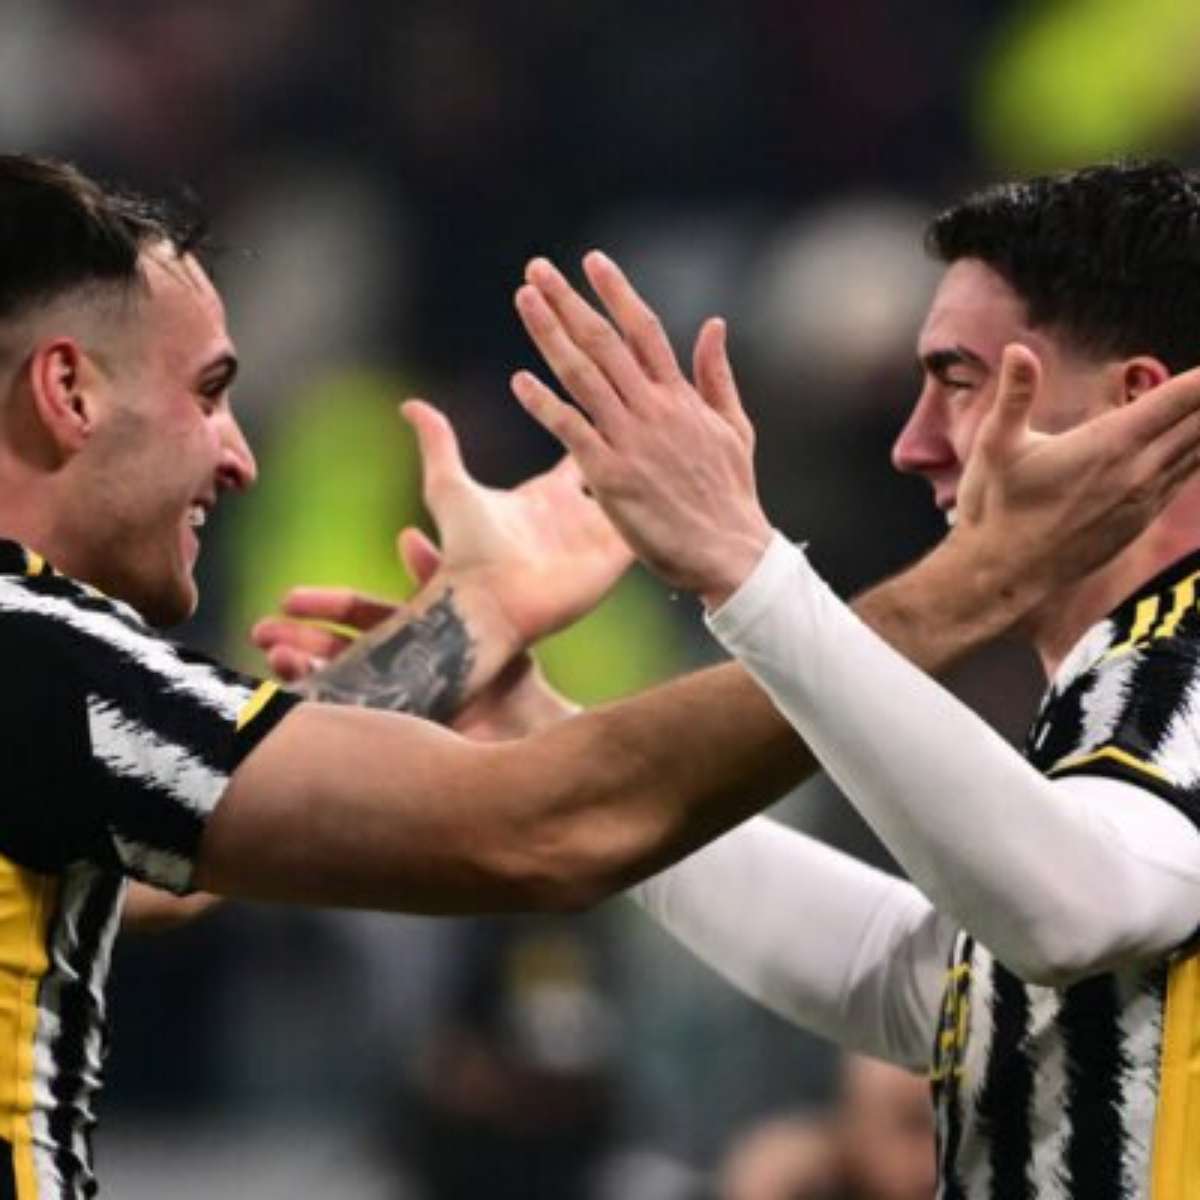 Italiano: Juventus vence Monza com gol no último lance e dorme na liderança